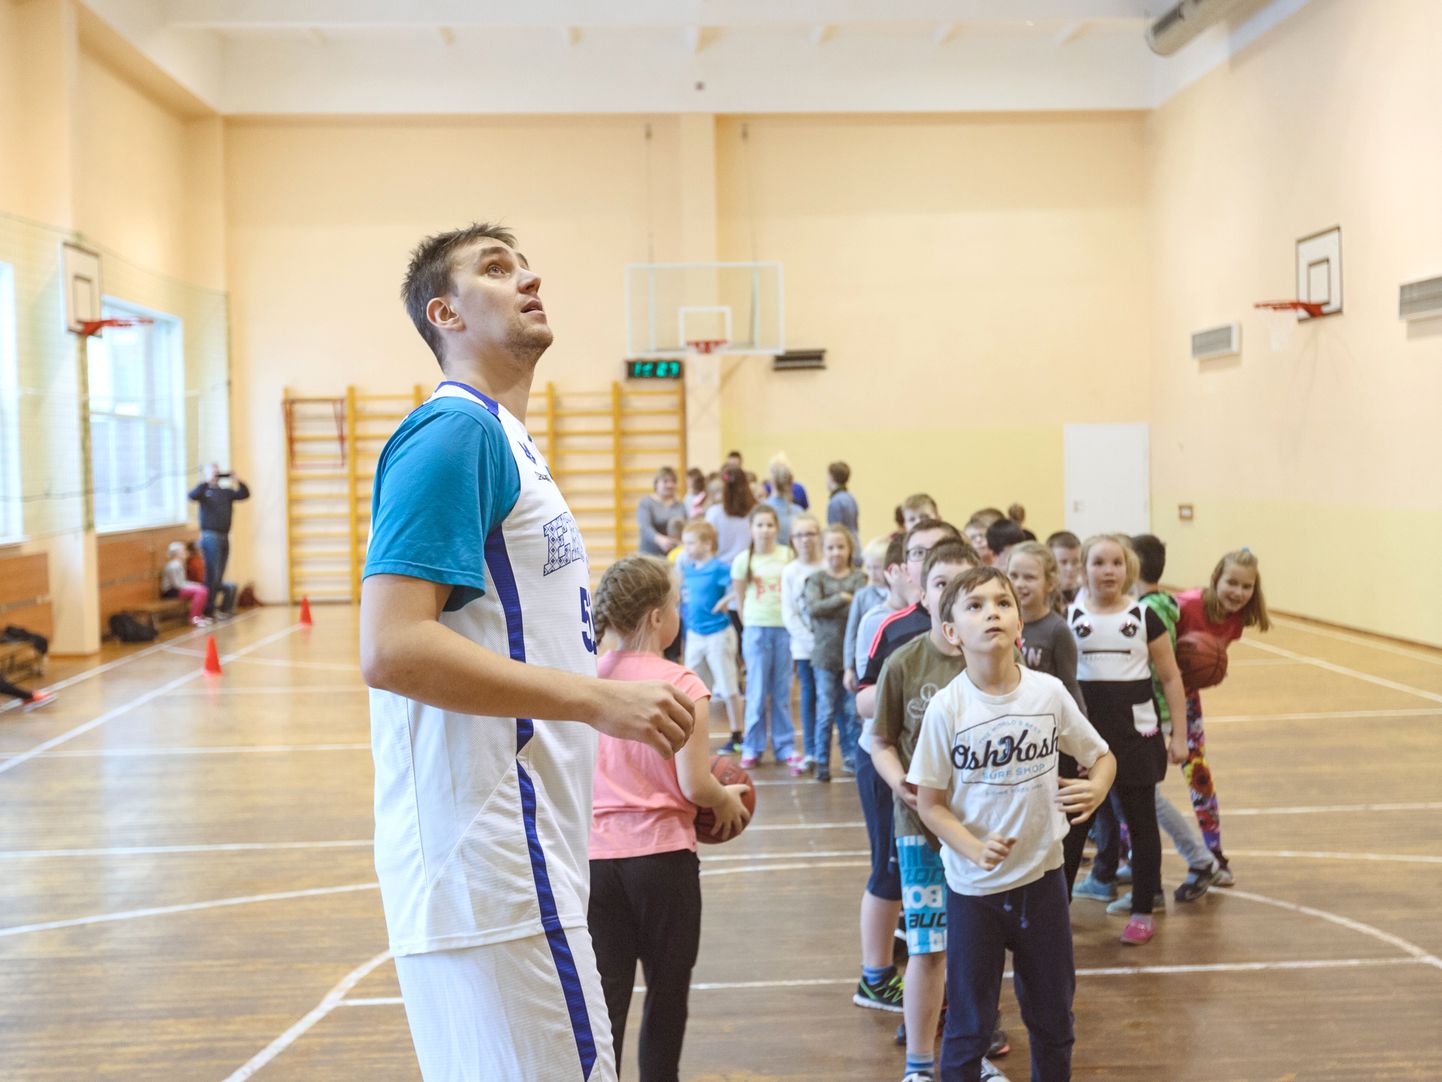 208 sentimeetri pikkune Reinar Hallik tegi 2016. aastal koos lastega Narva keeltelütseumi spordisaalis trenni üle-eestilise korvpalliprojekti "100 kooli" raames.